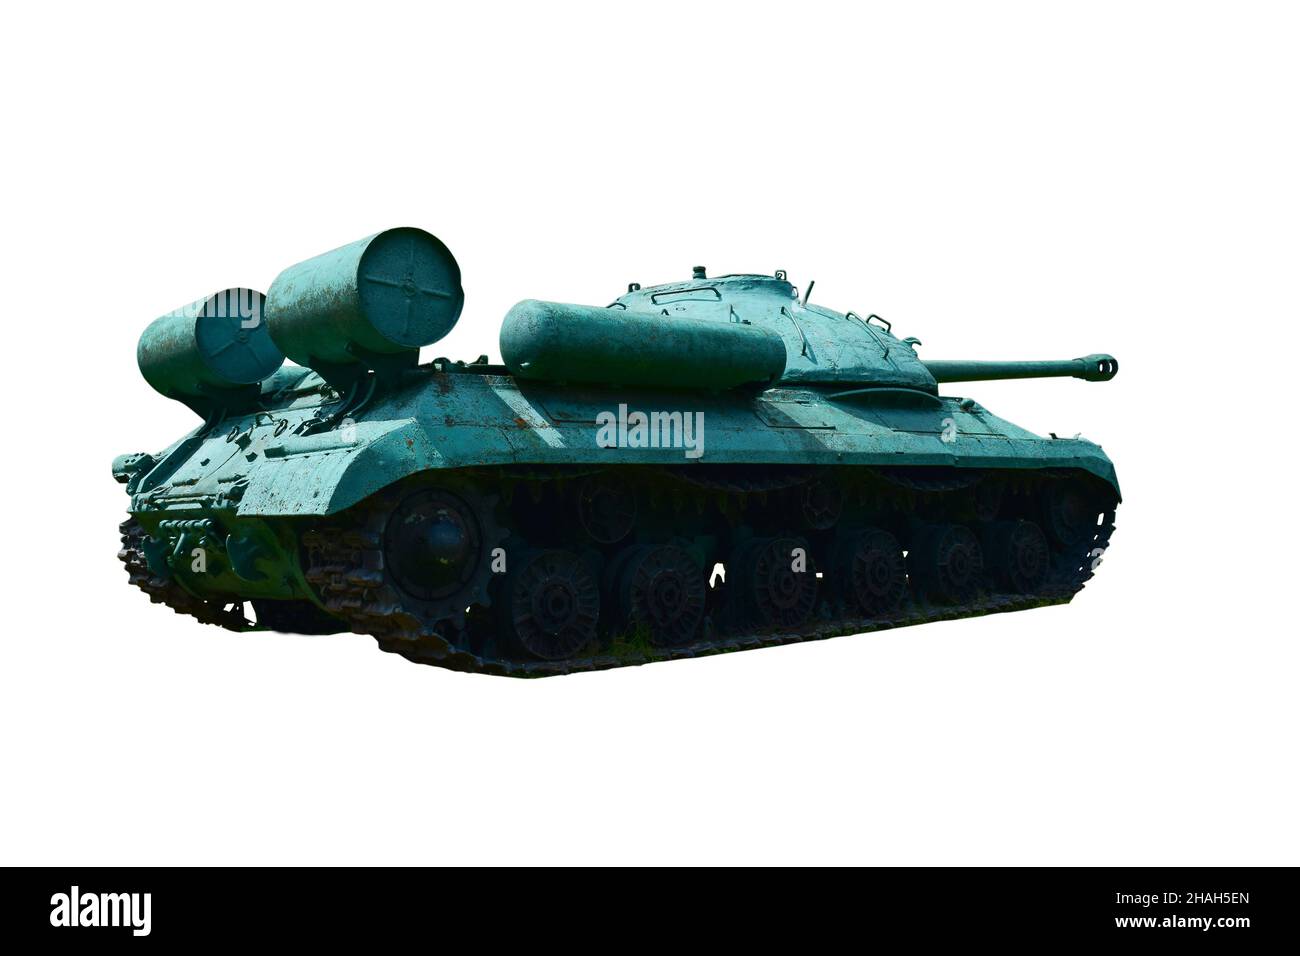 Sowjetischer alter schwerer Panzer des Zweiten Weltkriegs Fotografiert auf halber Seite und Rückseite vor einem weißen Hintergrund. Stockfoto